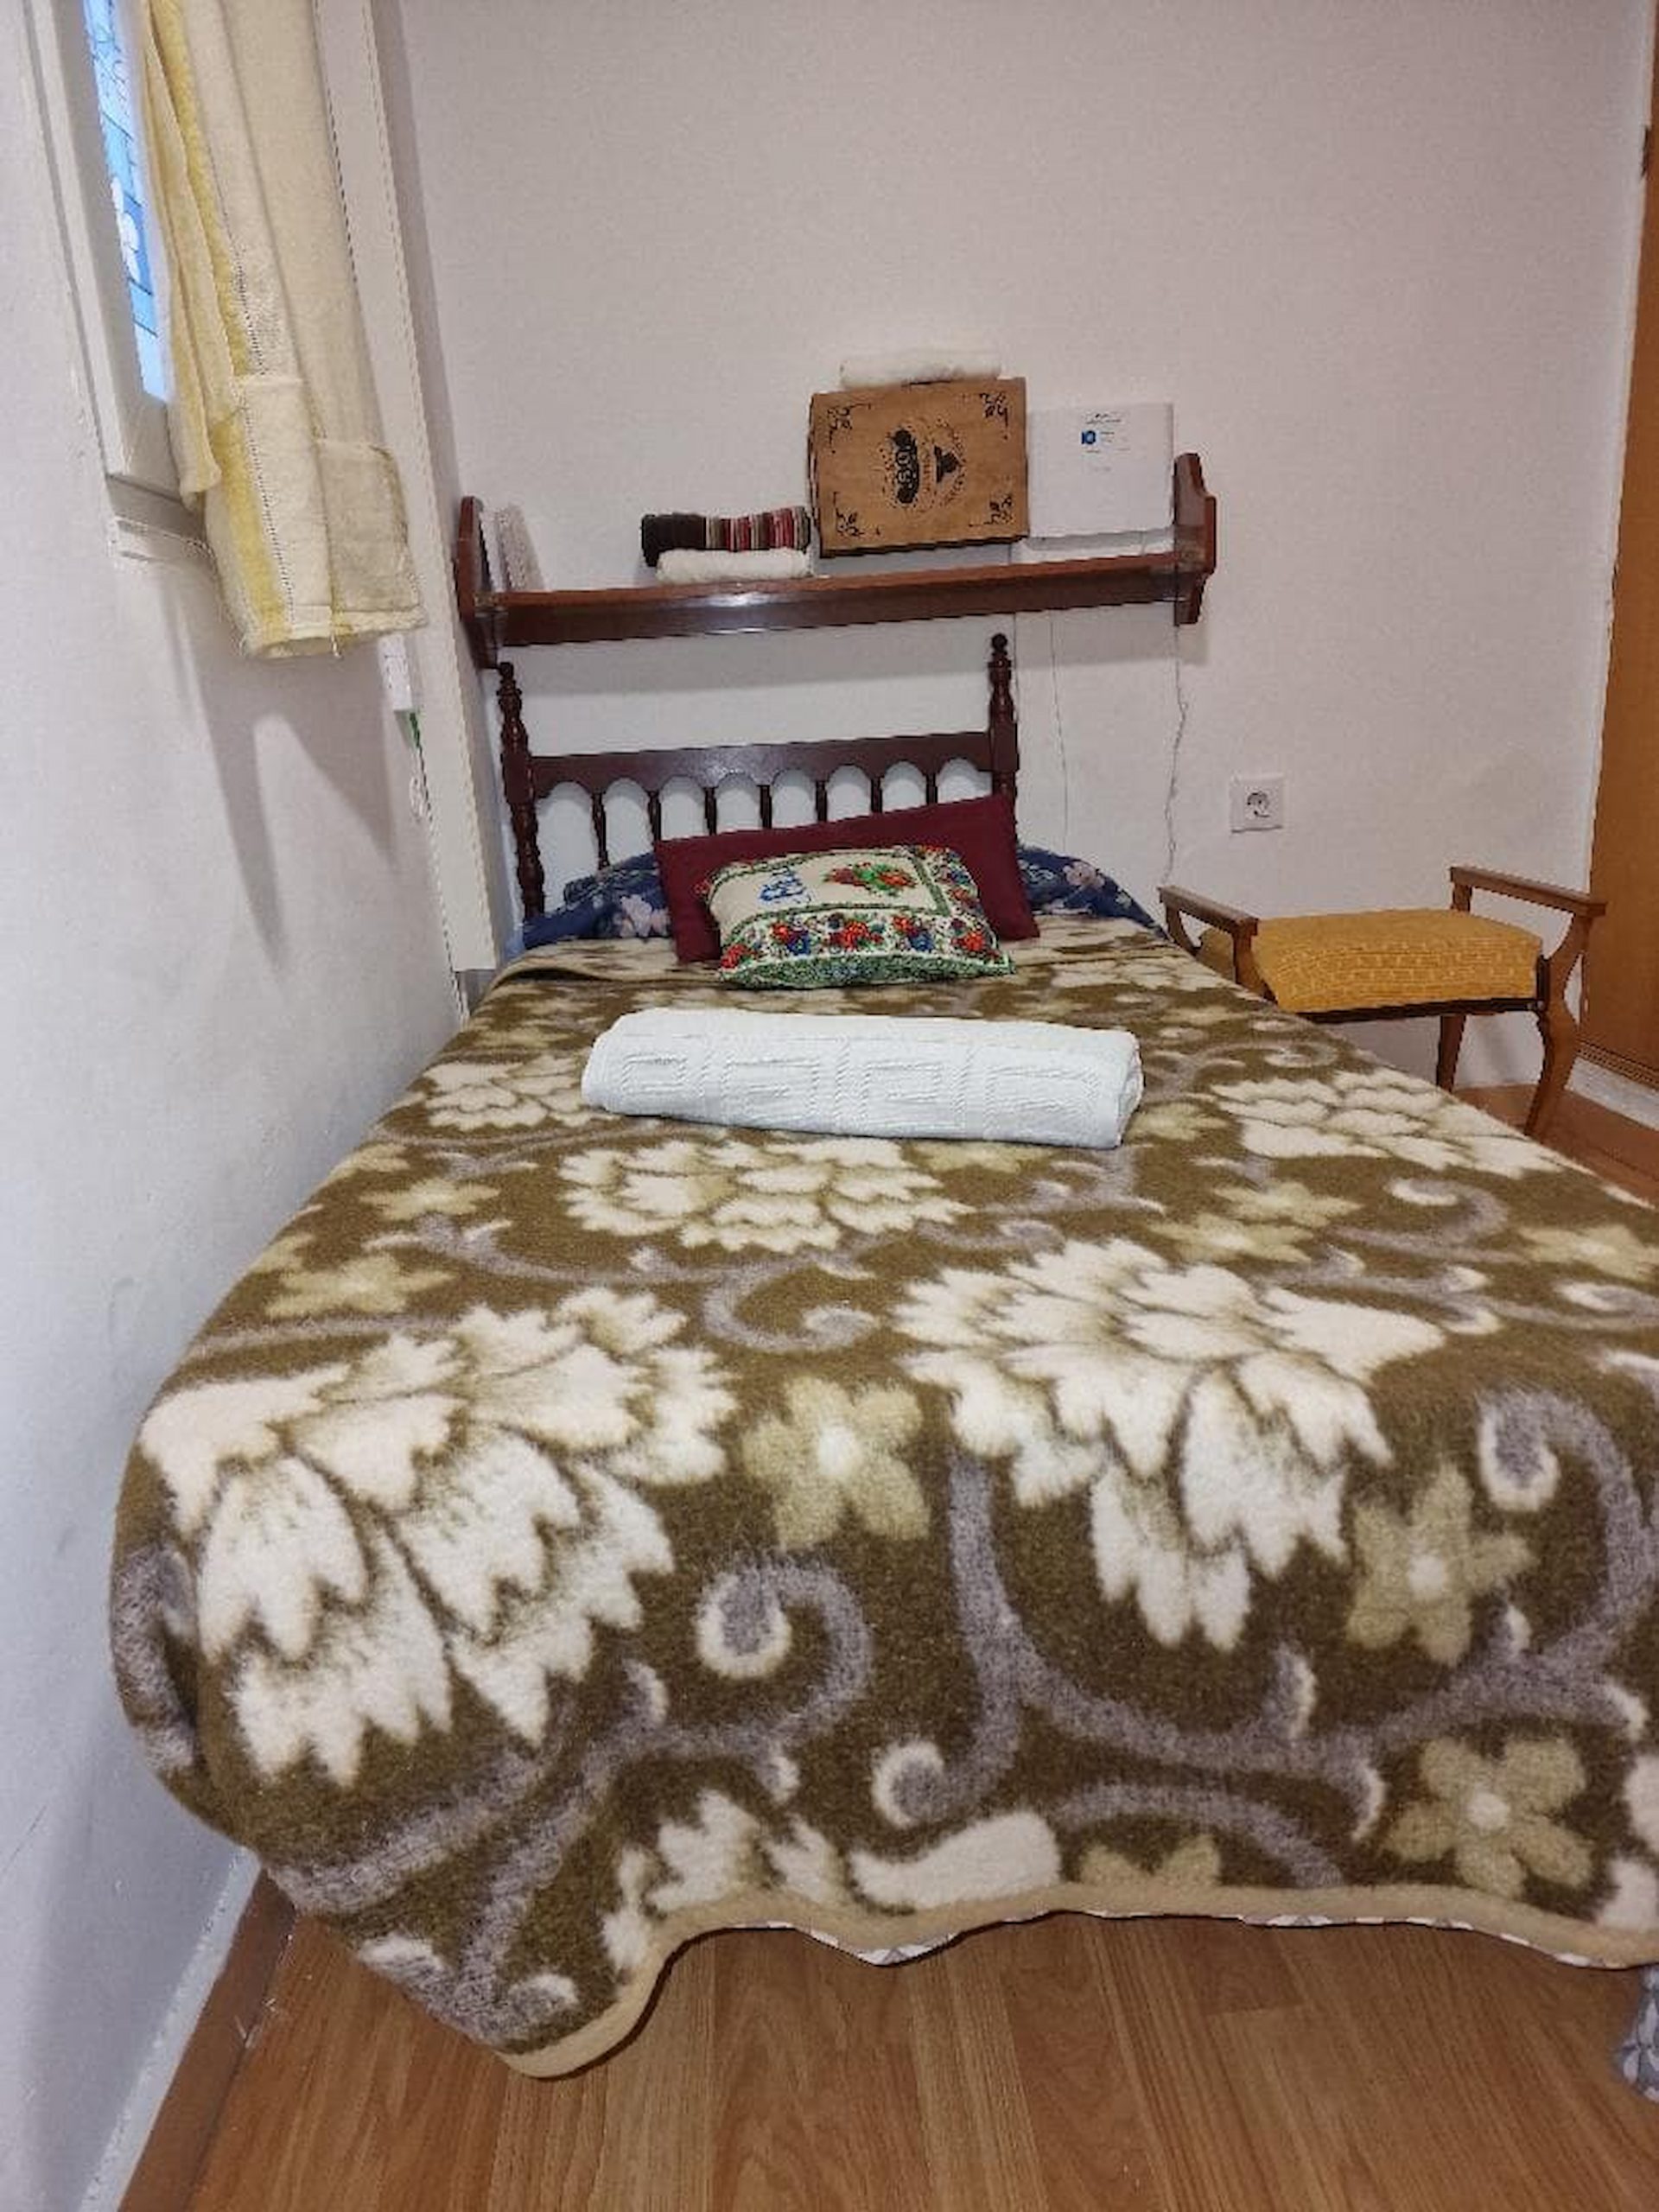 Palmeras 7 - 6 bedroom house for rent in San Sebastian de Los Reyes-Bedroom